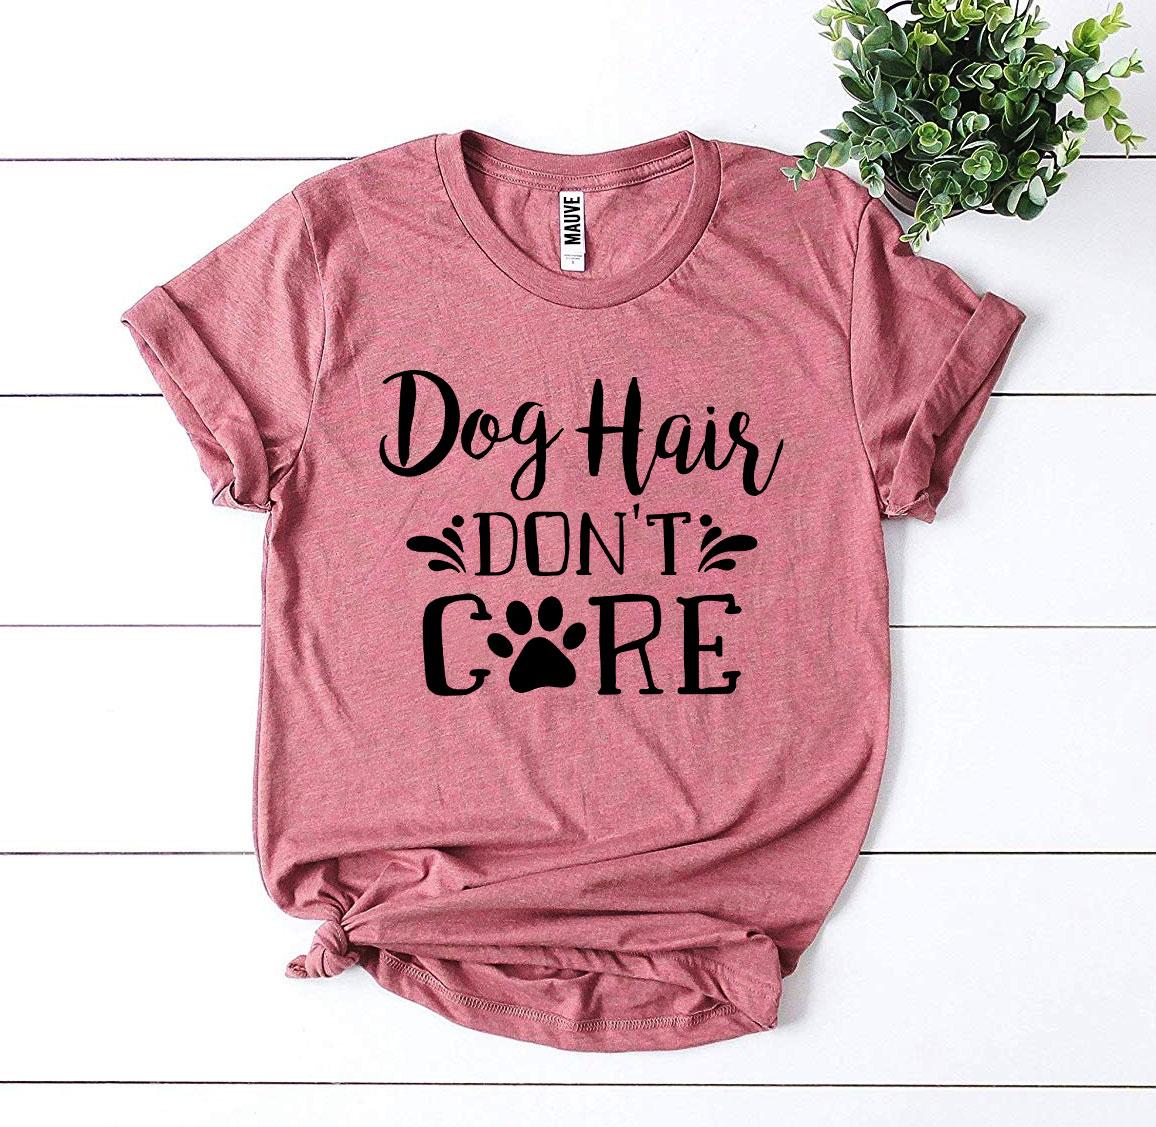 Dog Hair Don’t Care